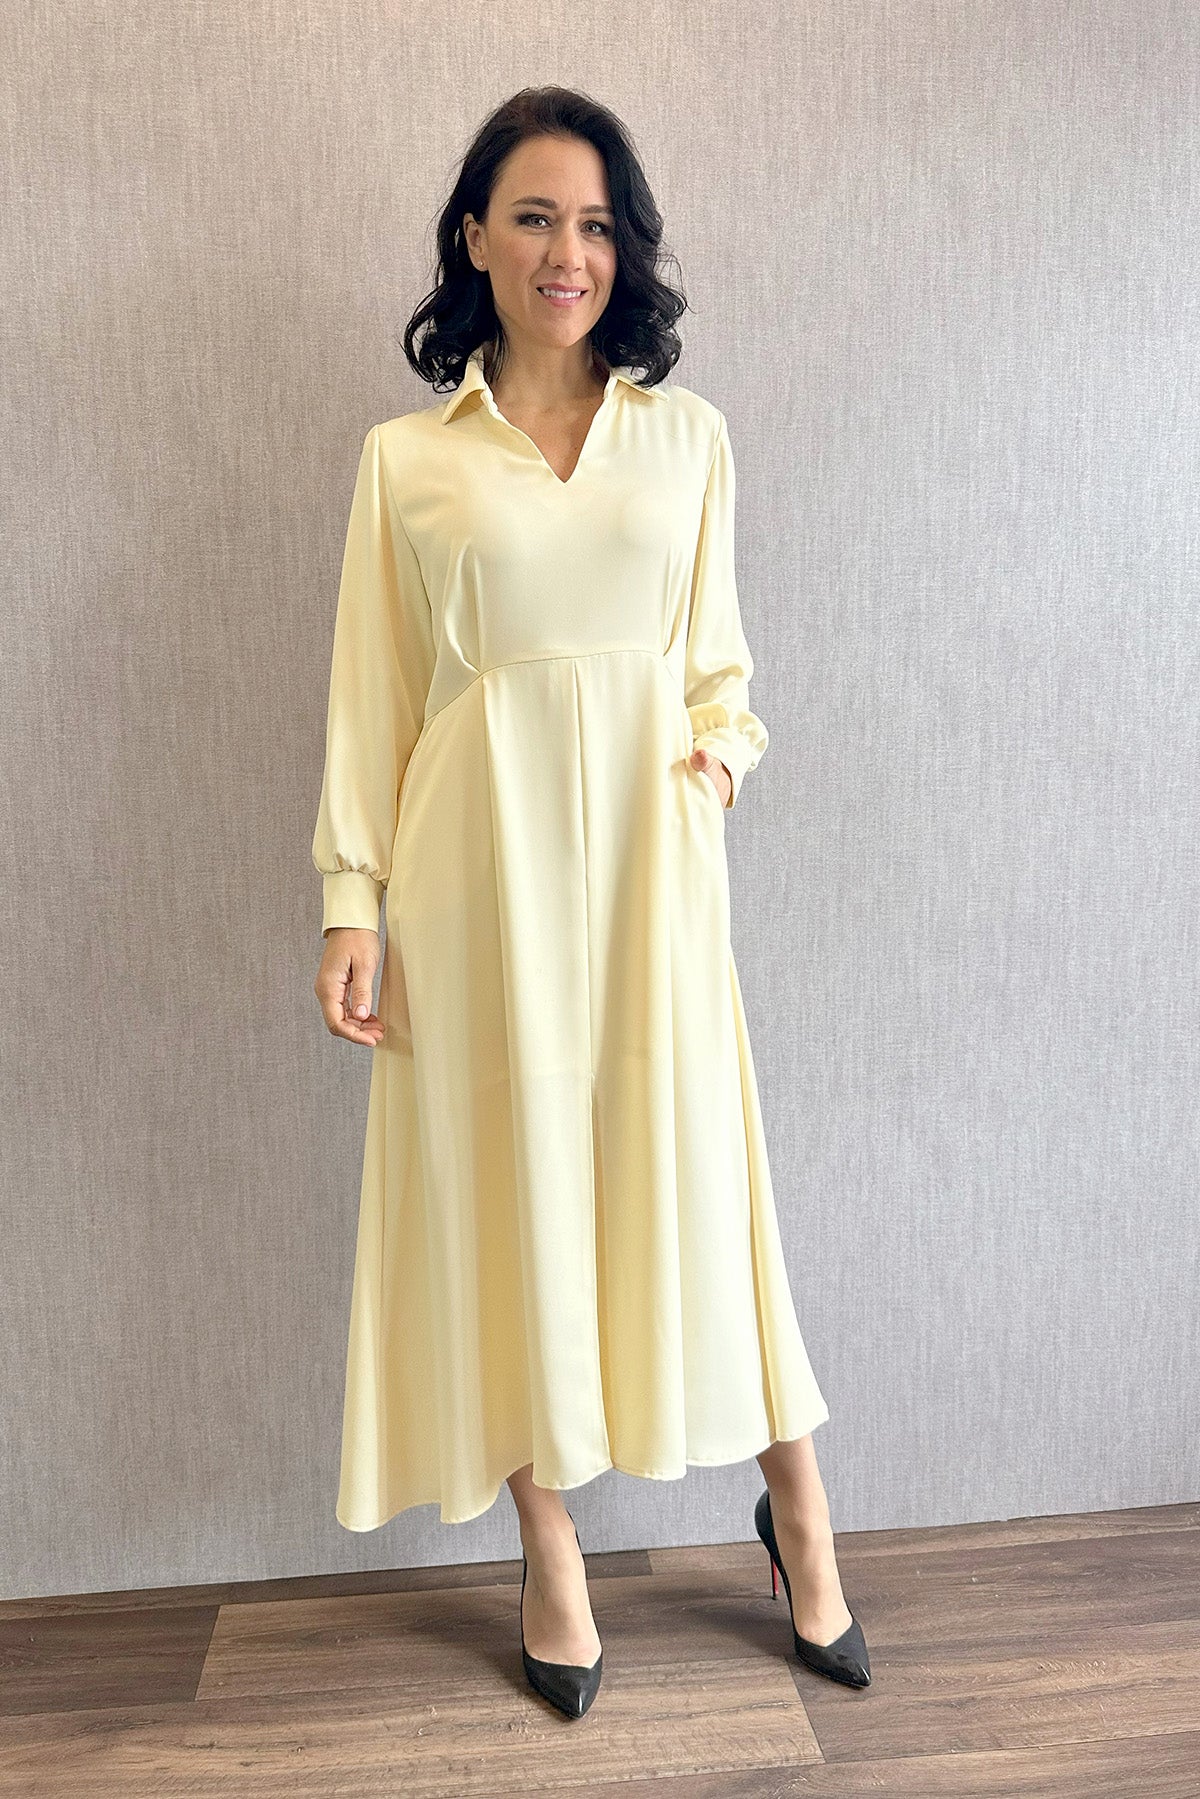 Pastelové šaty s límečkem - žluté